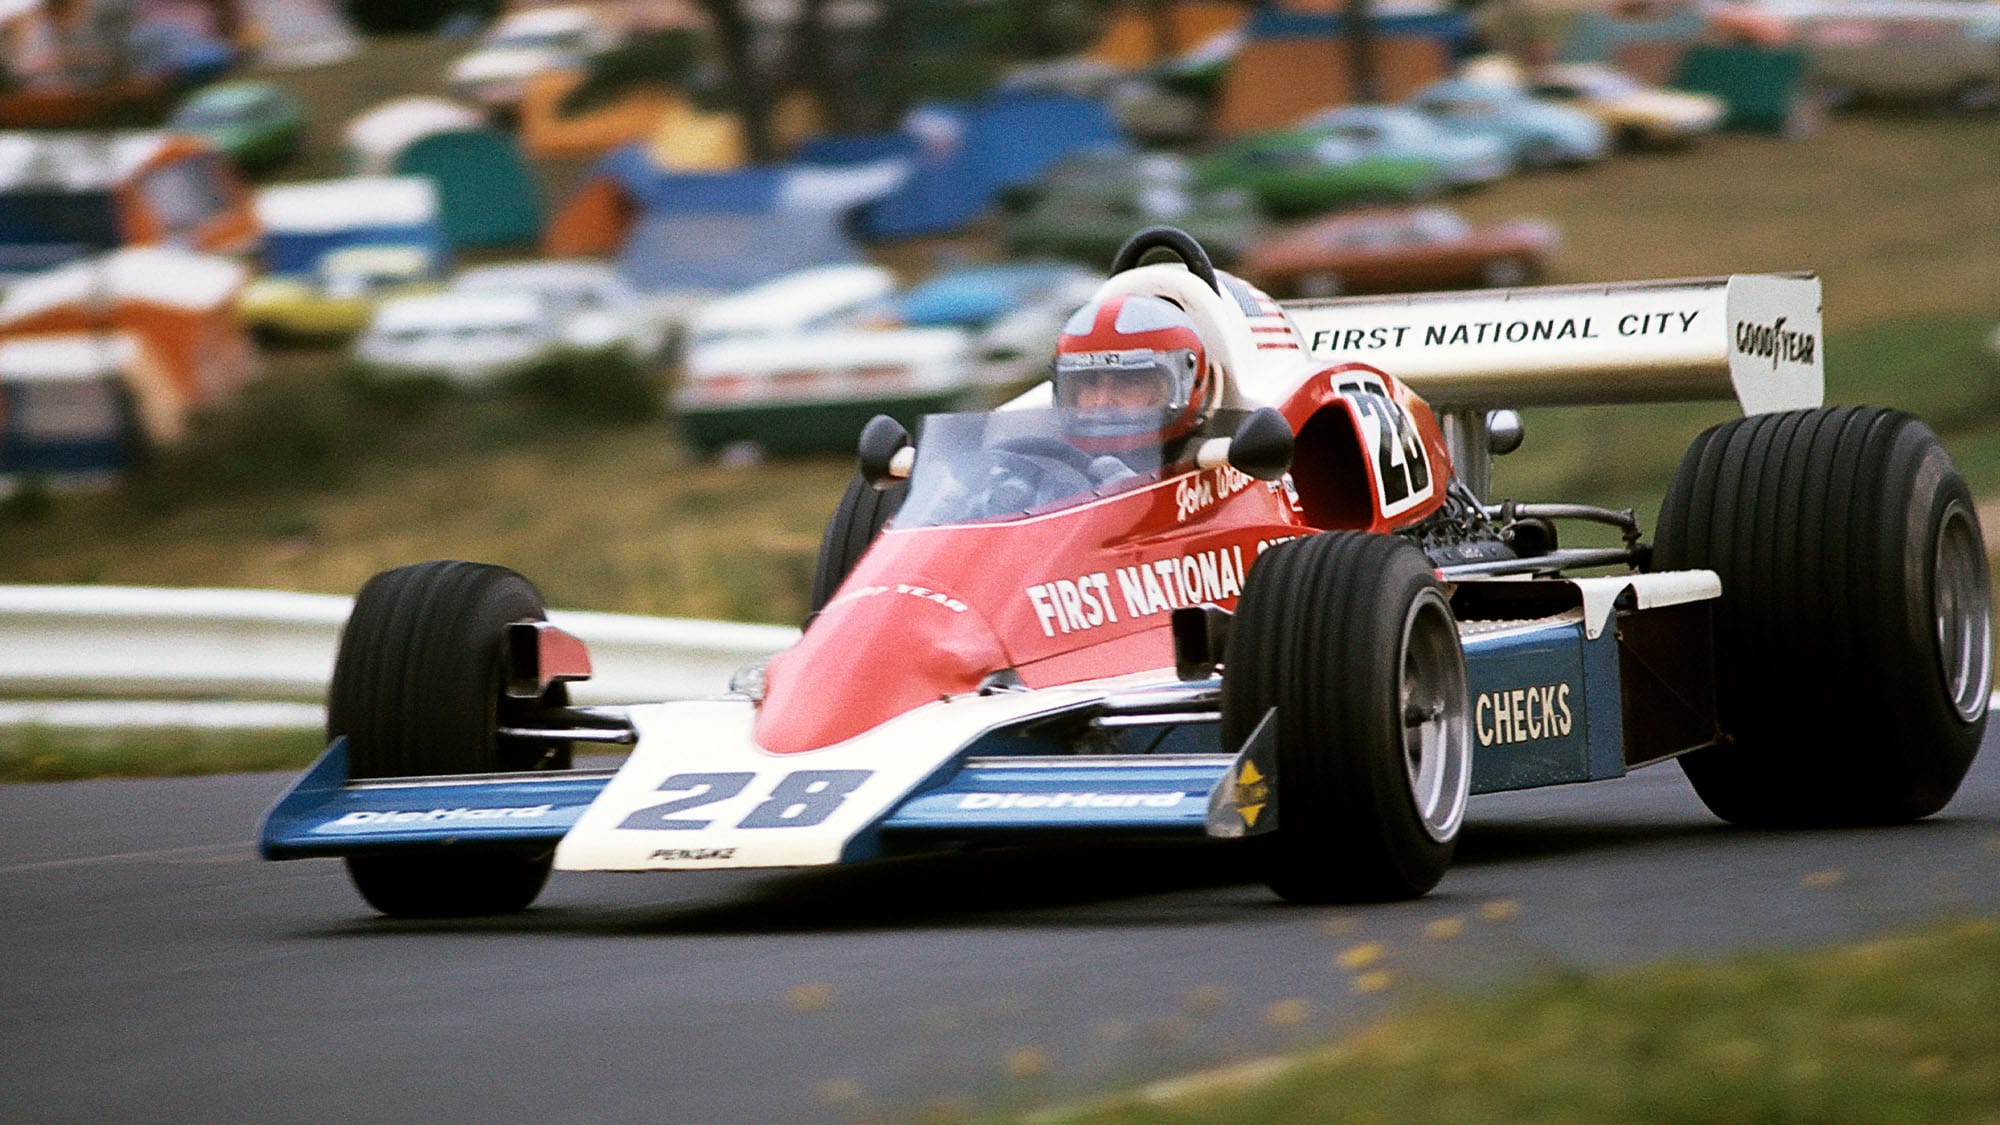 John Watson on Penske's F1 win after tragedy: 'The irony wasn't lost' -  Motor Sport Magazine